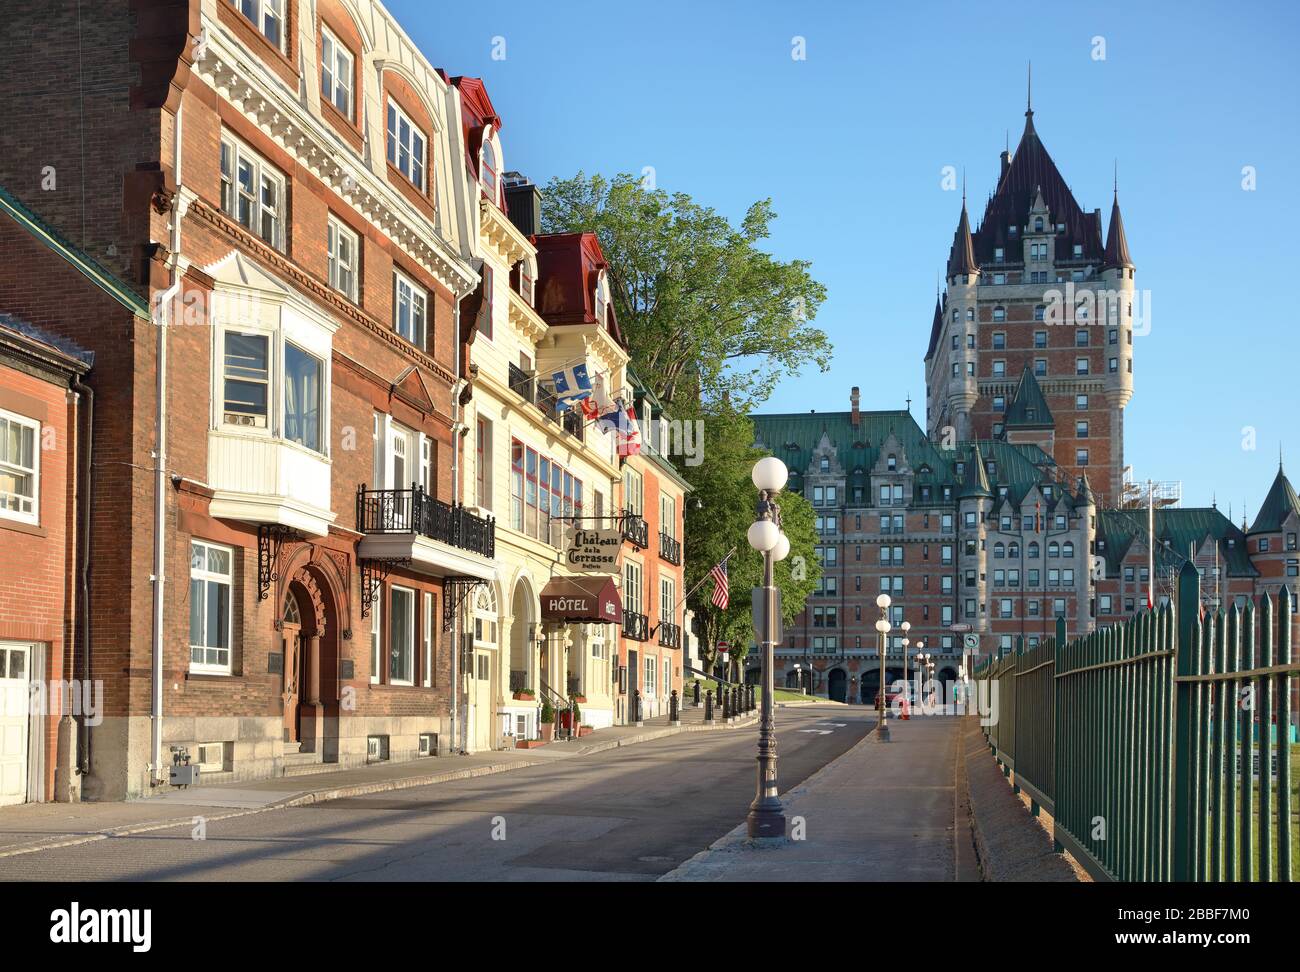 Illuminata al primo semaforo di Place Terrasse Dufferin, è un assortimento di residenze, una piccola hôtel e il Consolato degli Stati Uniti. Alla fine della strada si trova l'iconico Chateau Frontenac, Quebec City, provincia di Quebec, Canada Foto Stock